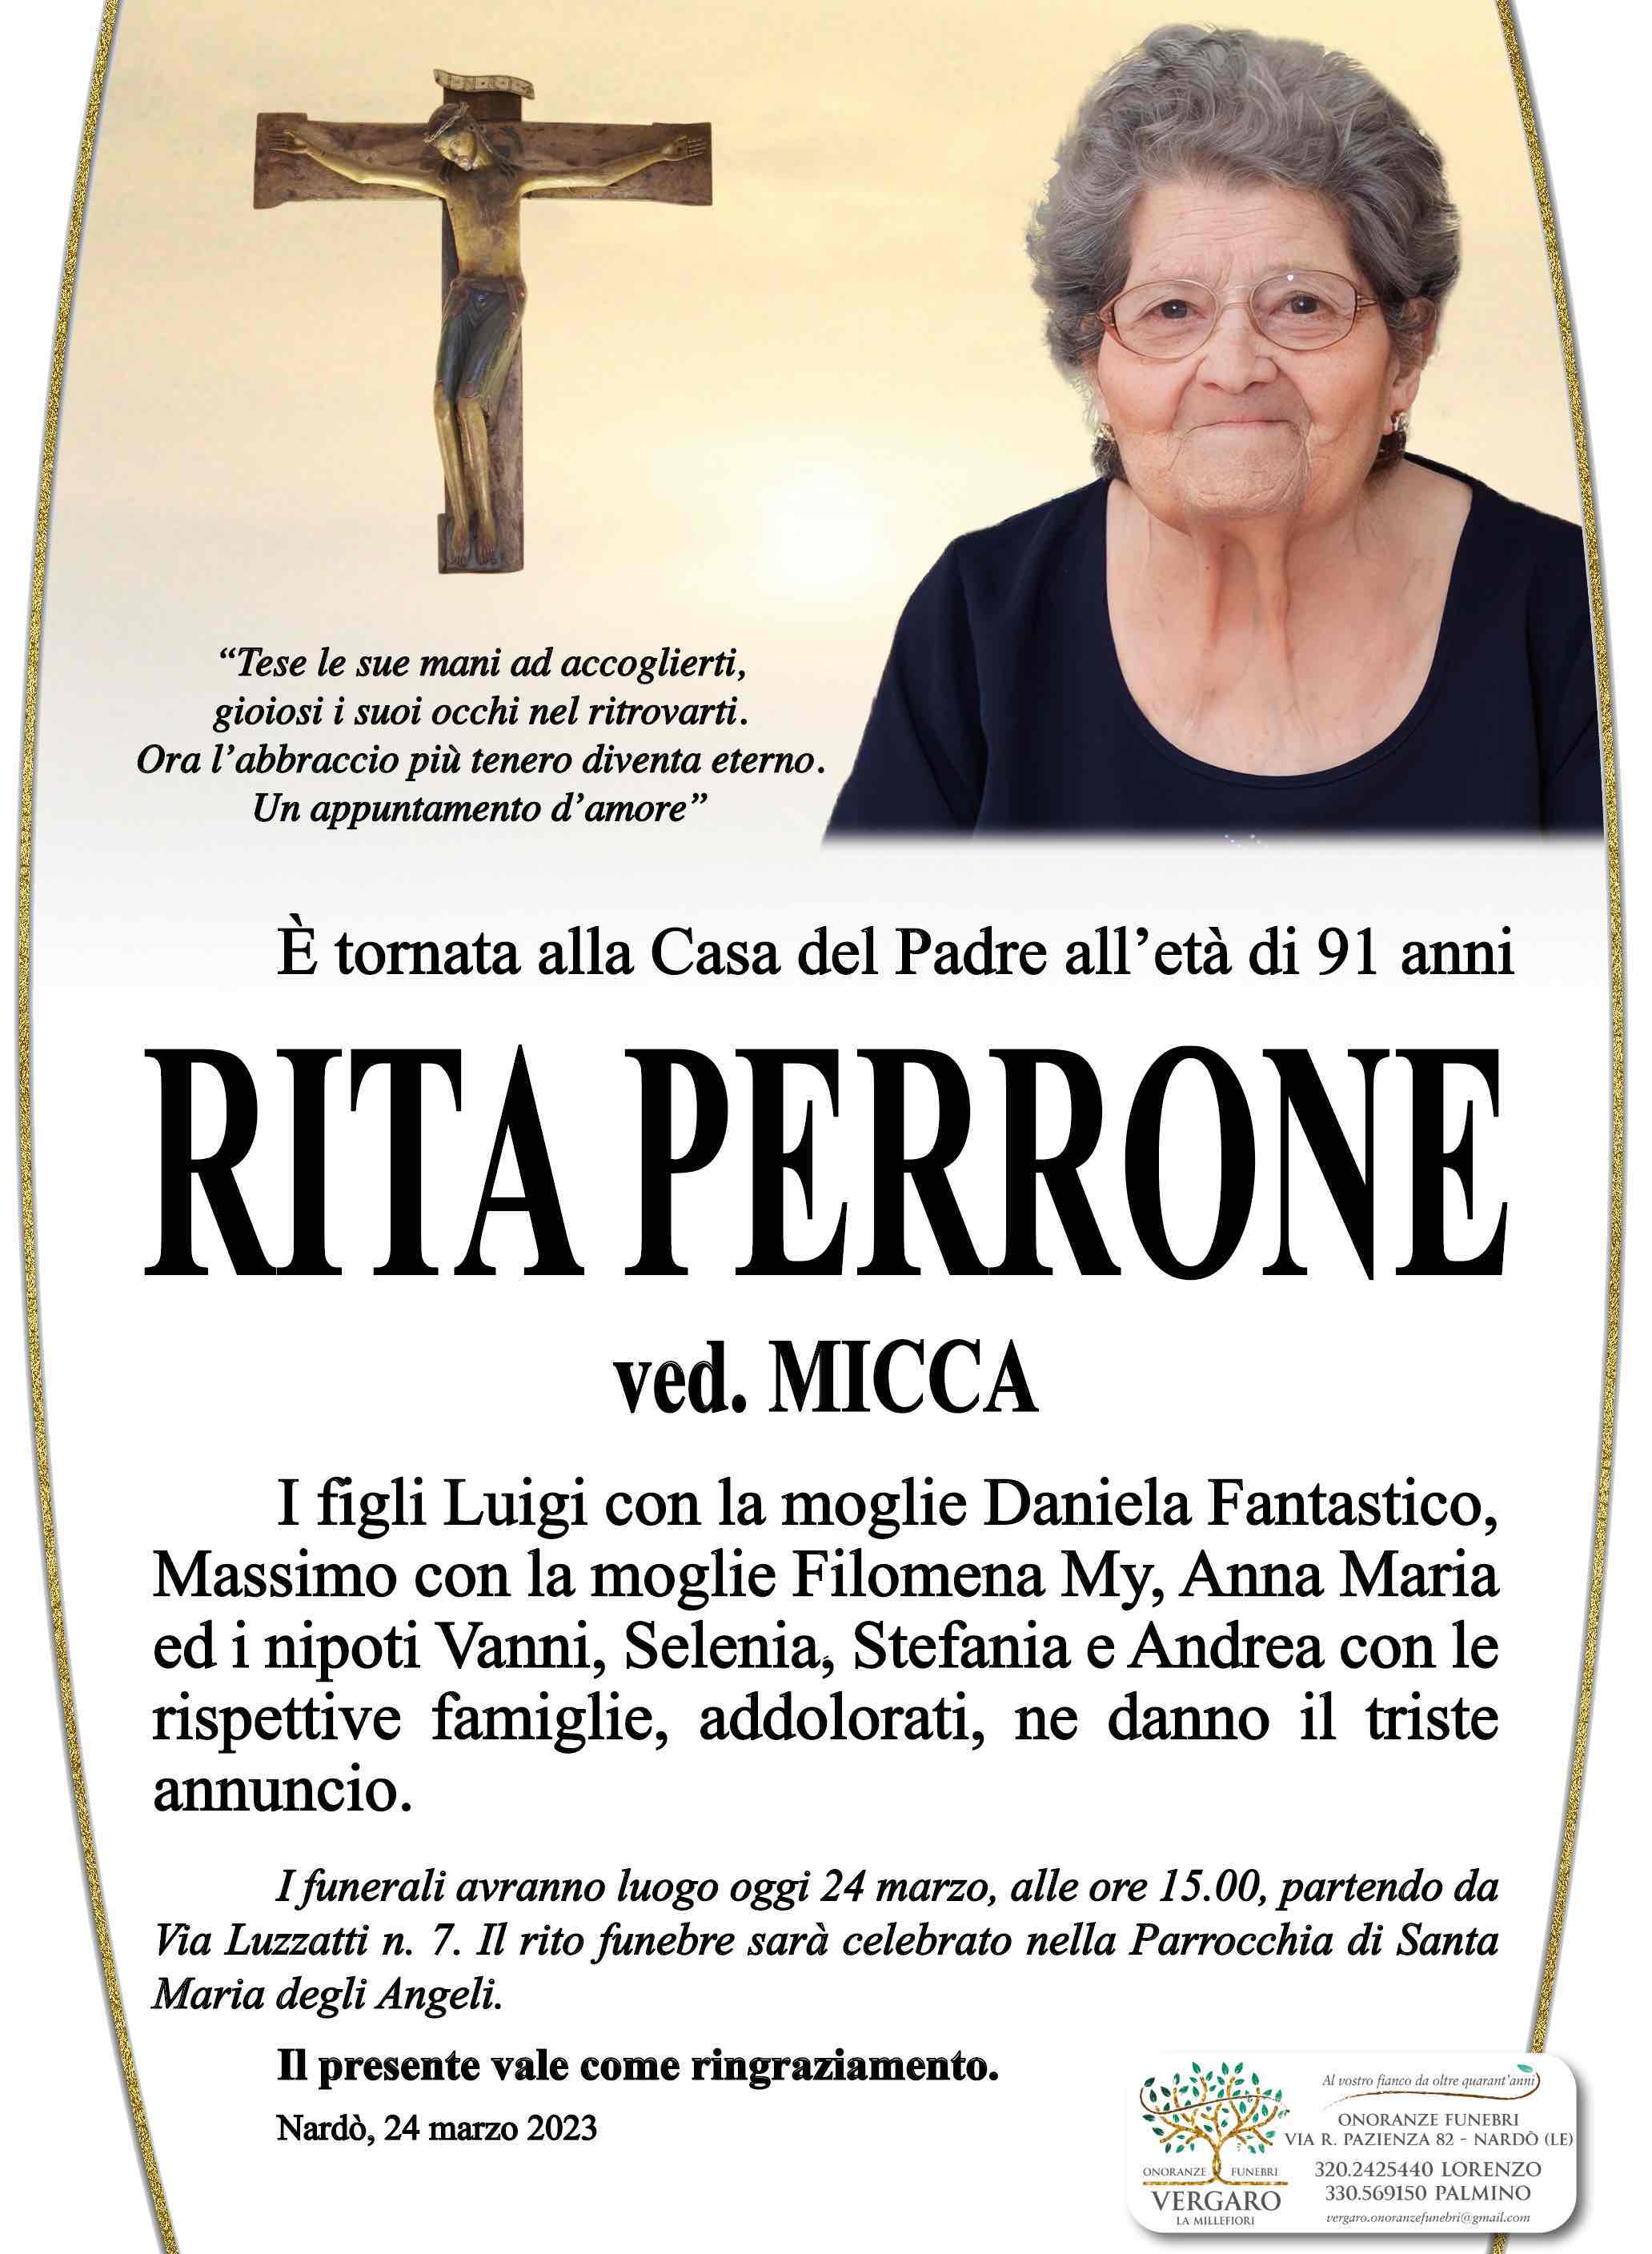 Rita Perrone